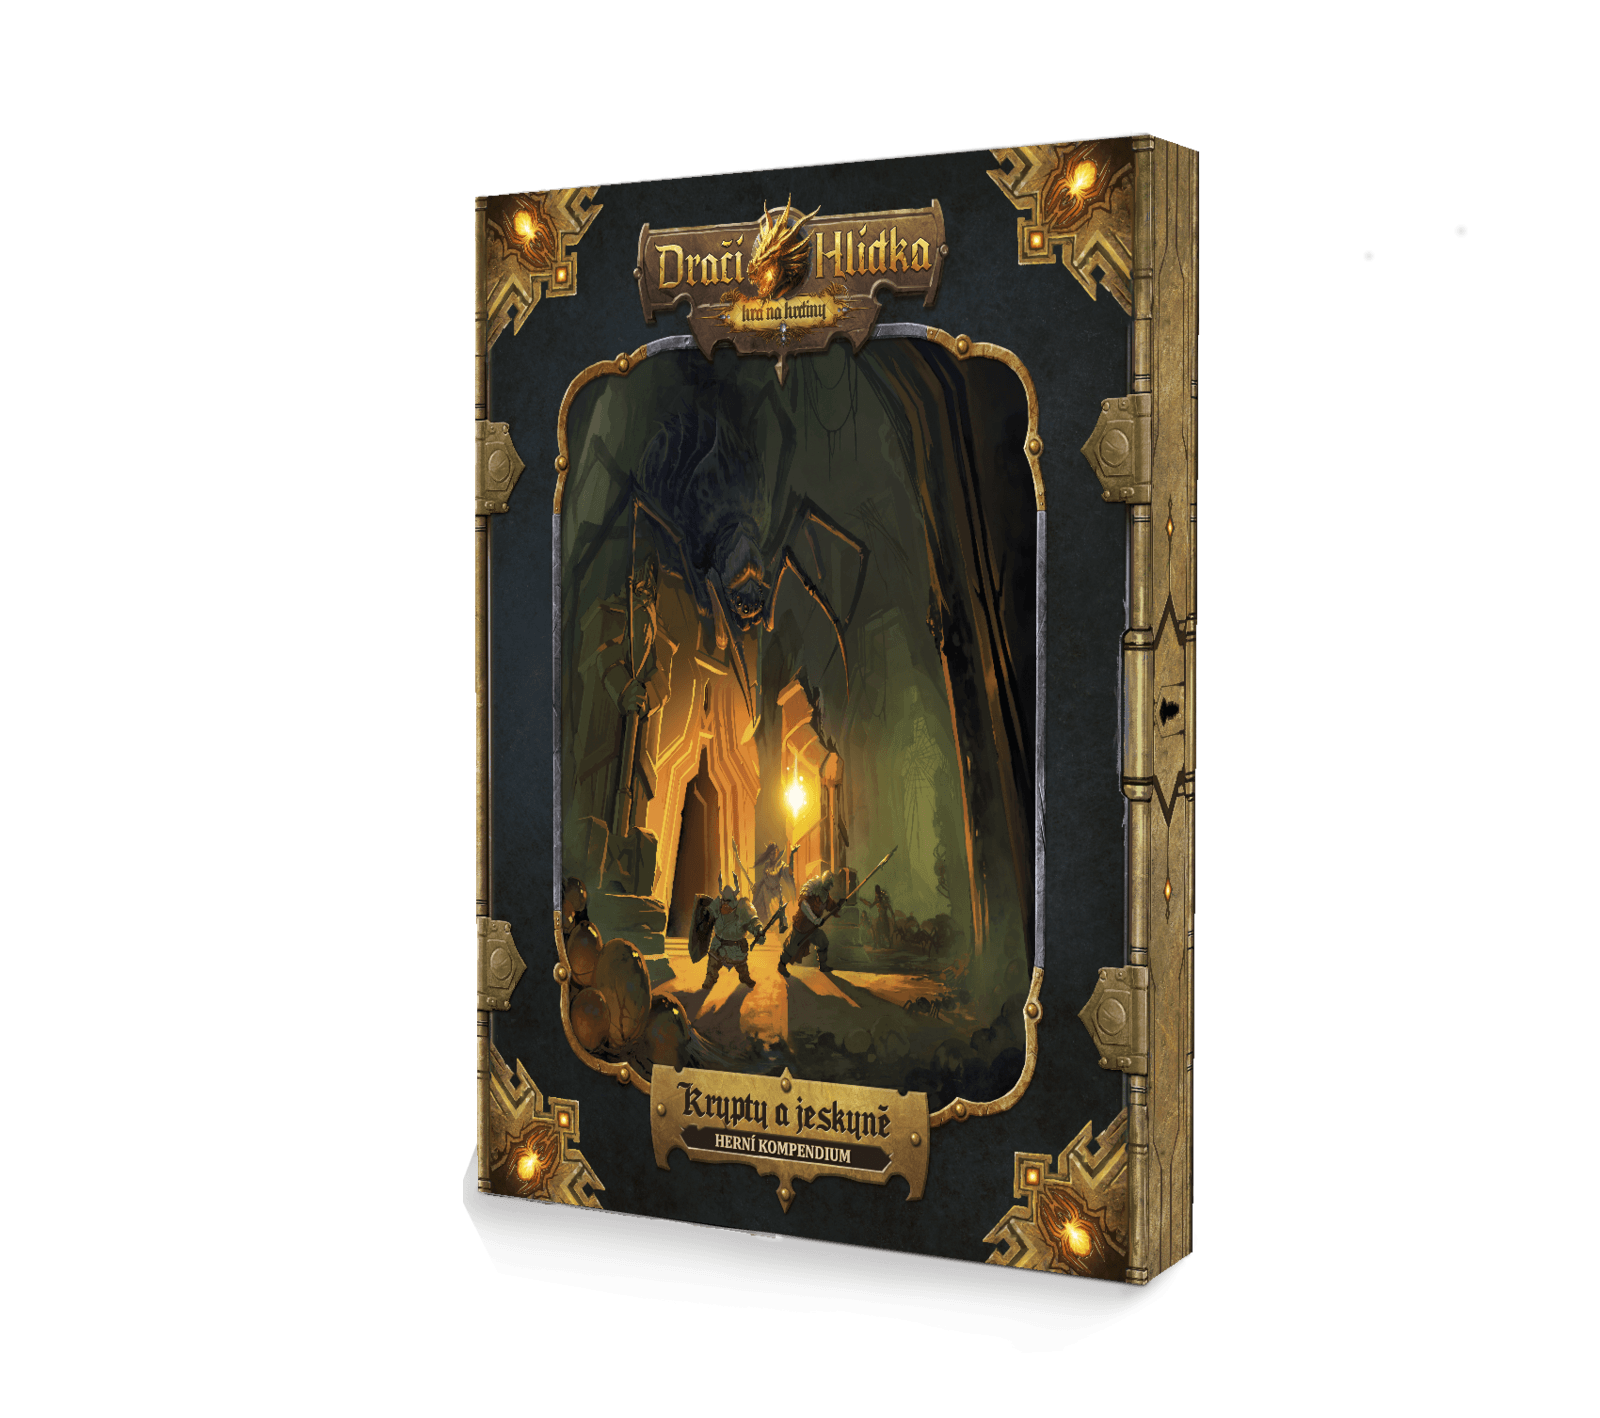 Black Tower Dračí hlídka: Herní kompendium – Krypty a jeskyně